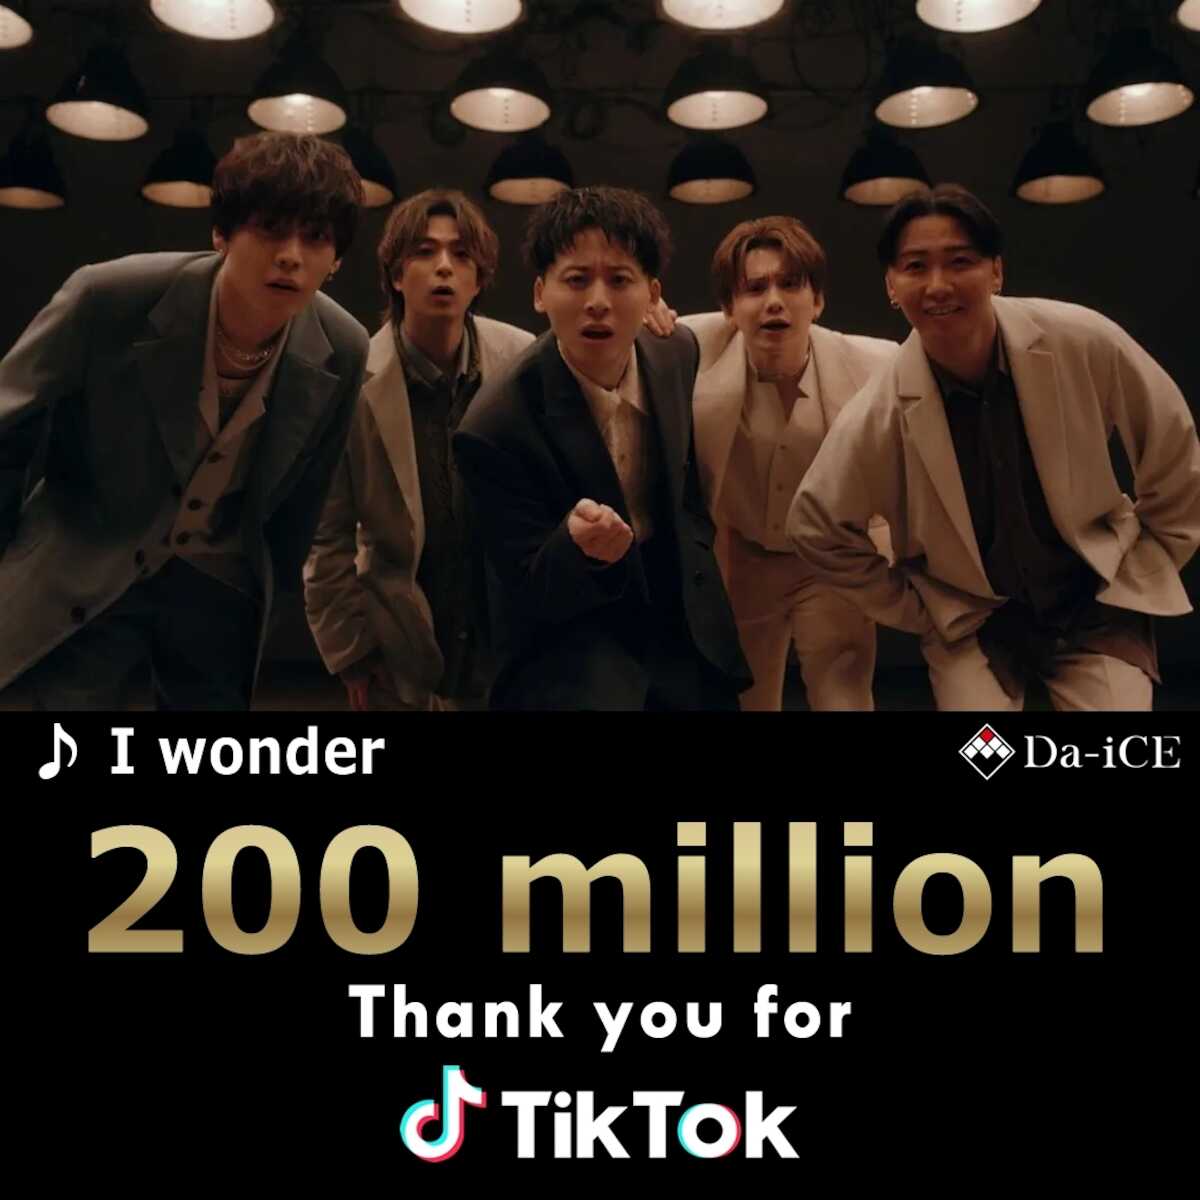 Da―iCEの新曲「I wonder」TikTok総再生回数が2億回を突破!